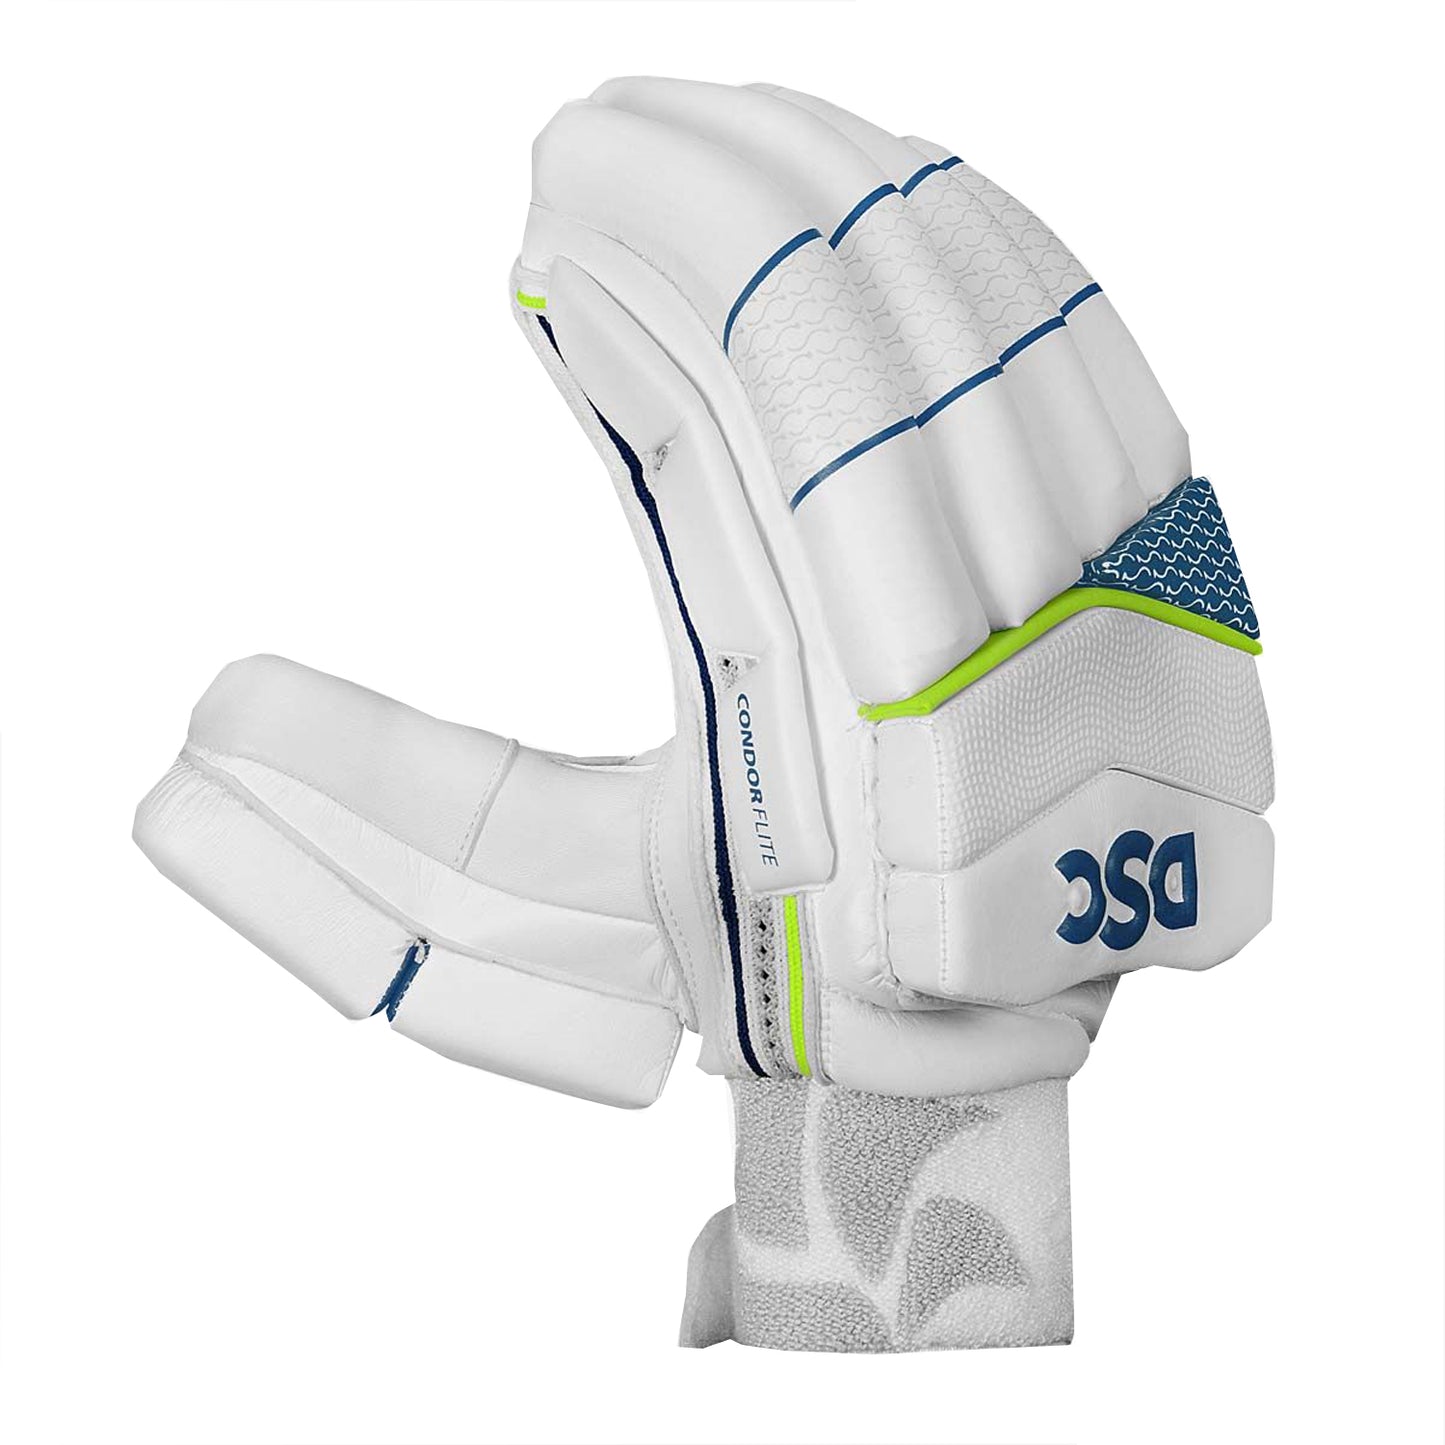 DSC Condor Flite RH Batting Gloves , White - Best Price online Prokicksports.com